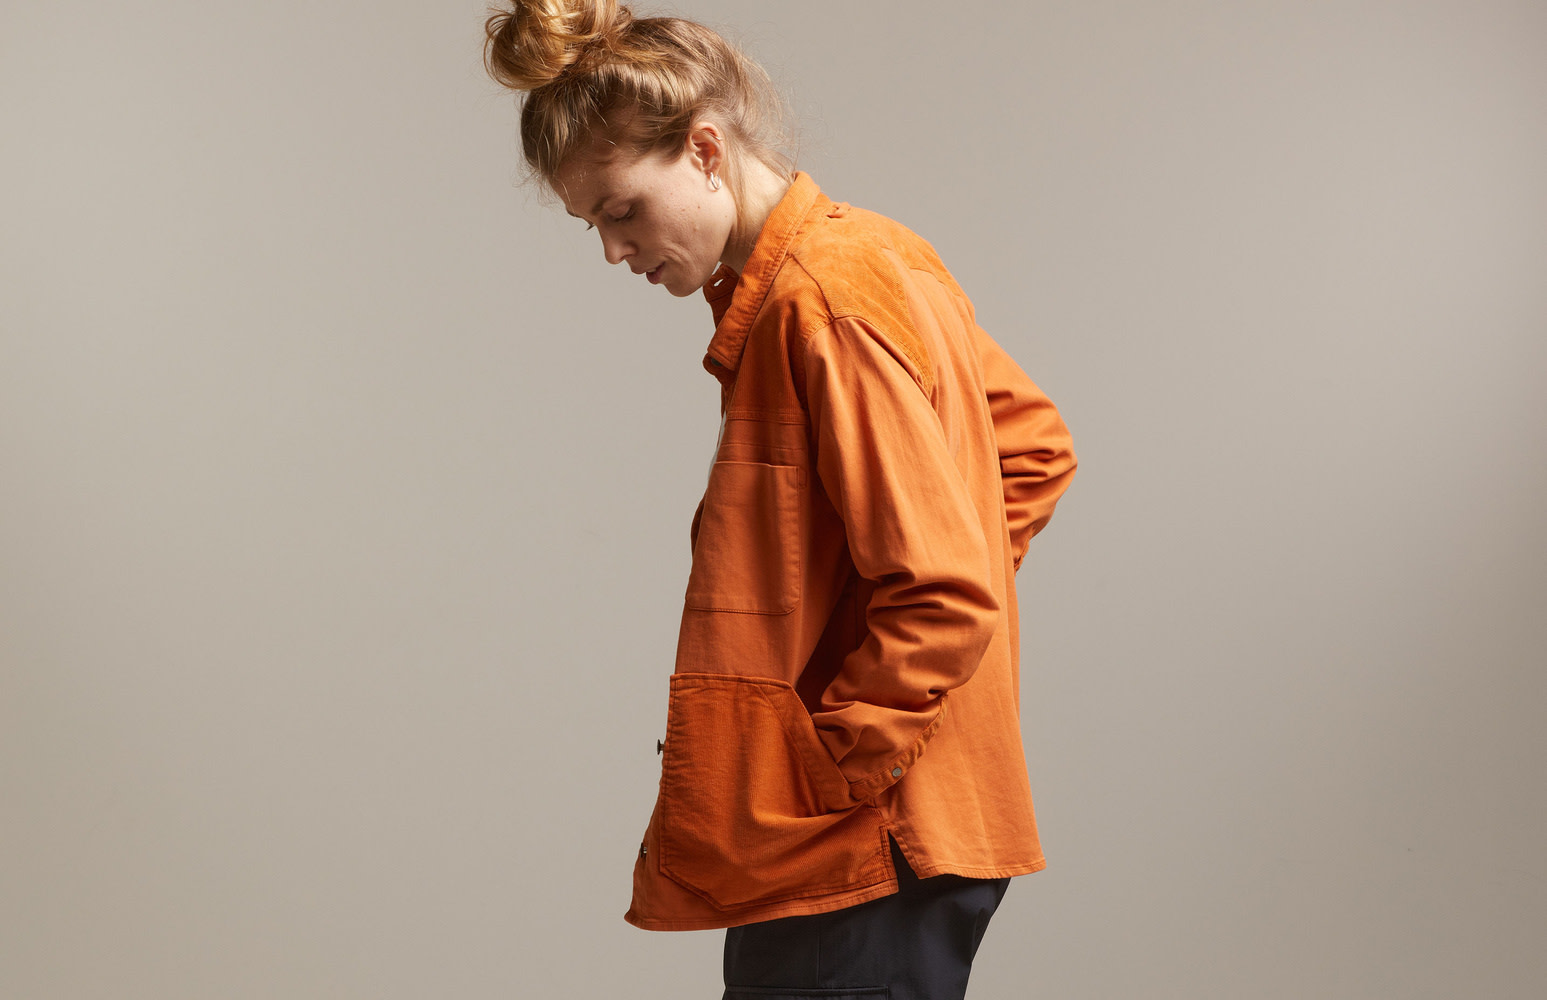 Buy Women's 6 22 Curve 2 Pack Sportswear Multipack Bras Lingerie Online, haru woolen jacket